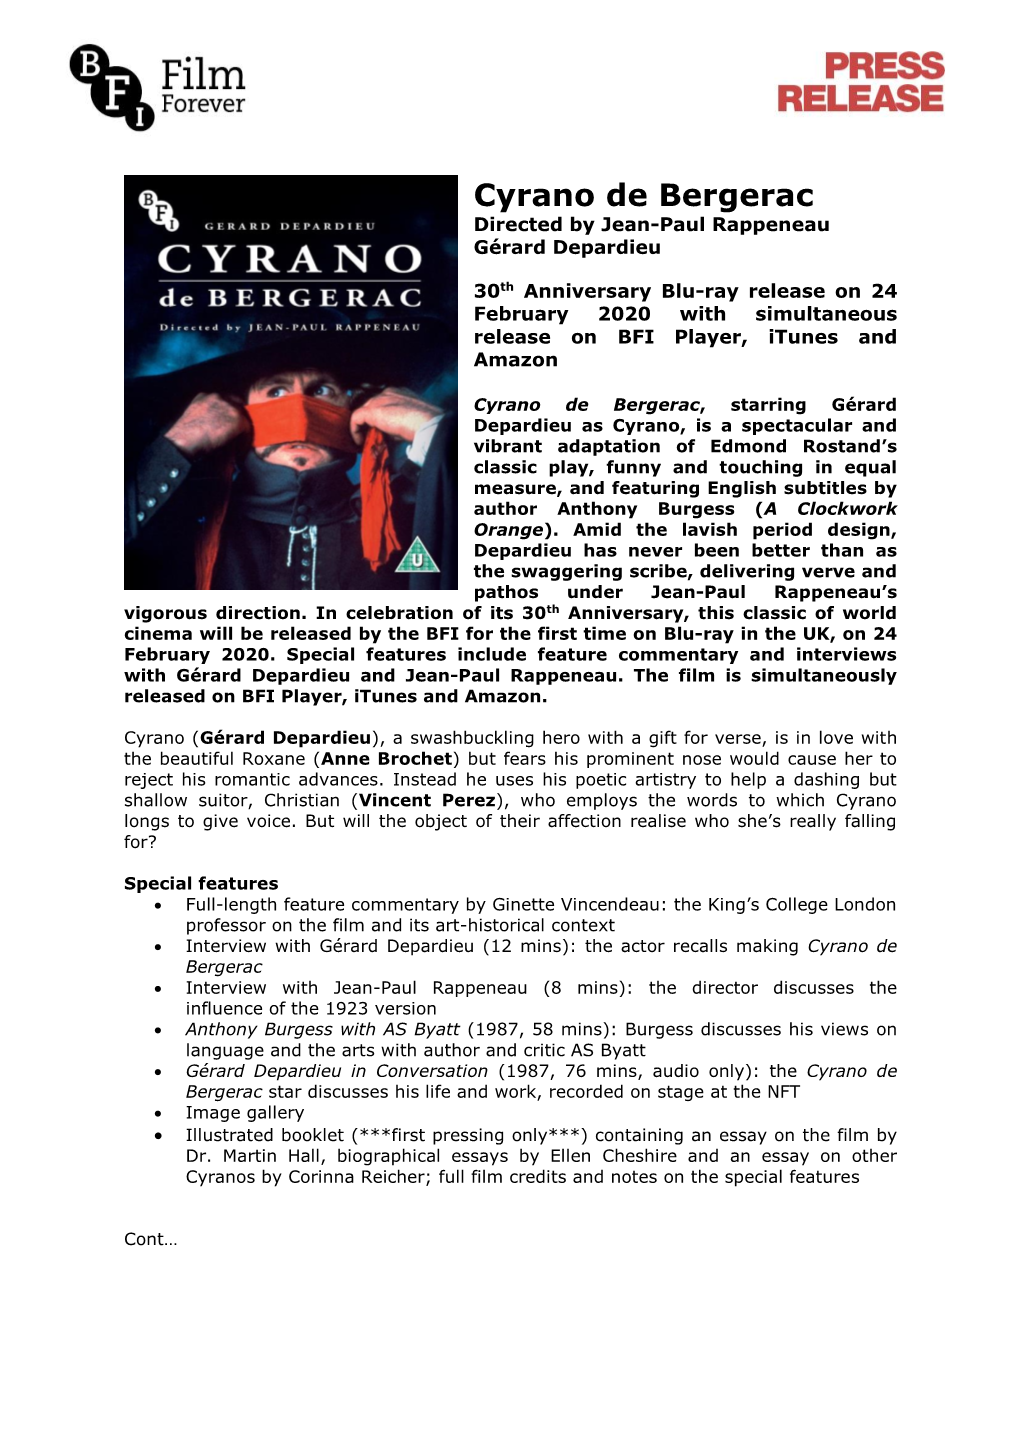 Cyrano De Bergerac Directed by Jean-Paul Rappeneau Gérard Depardieu